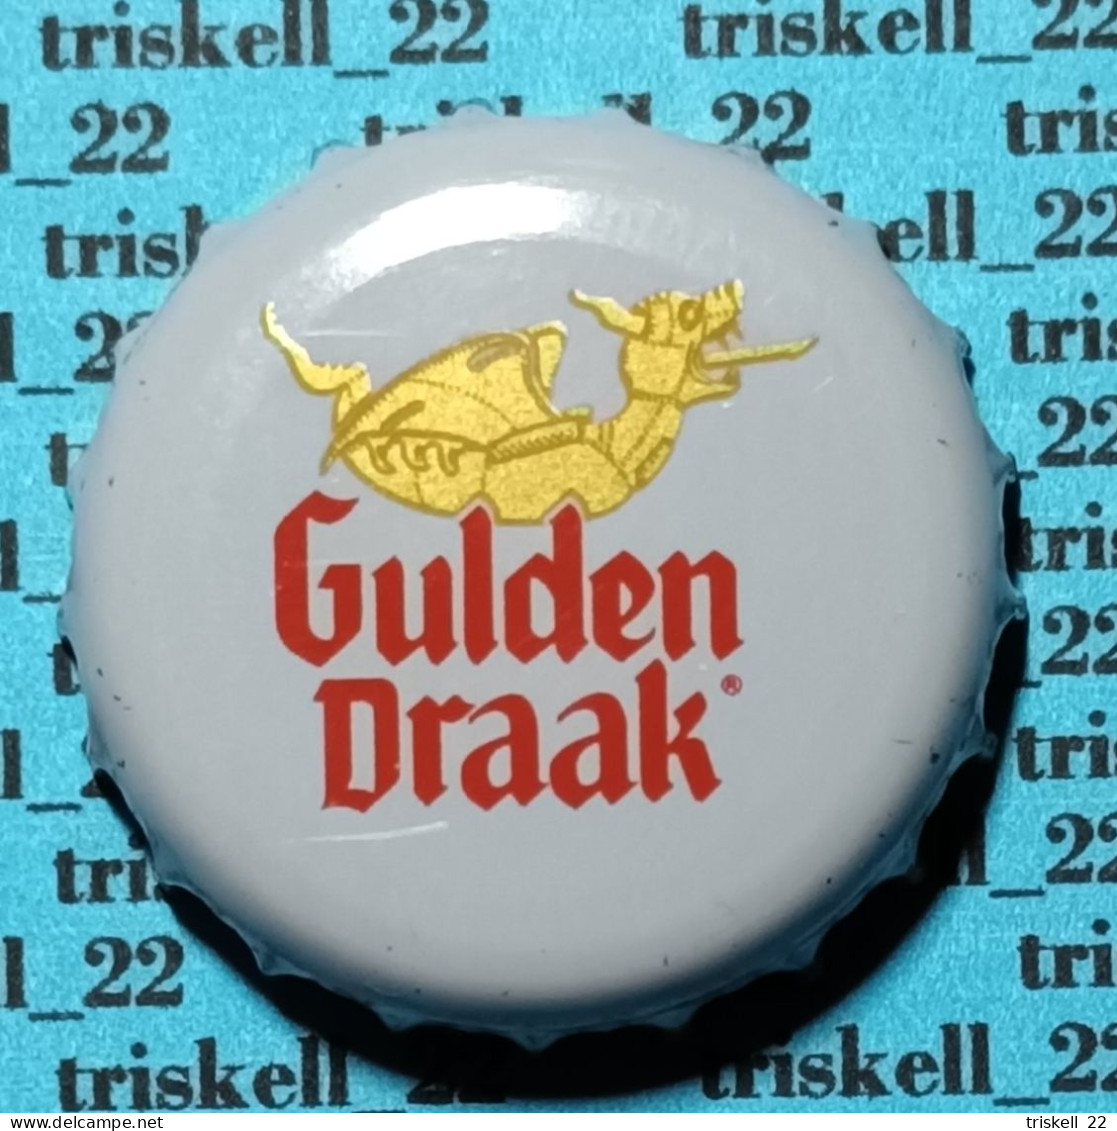 Gulden Draak Classic    Lot N° 39 - Beer